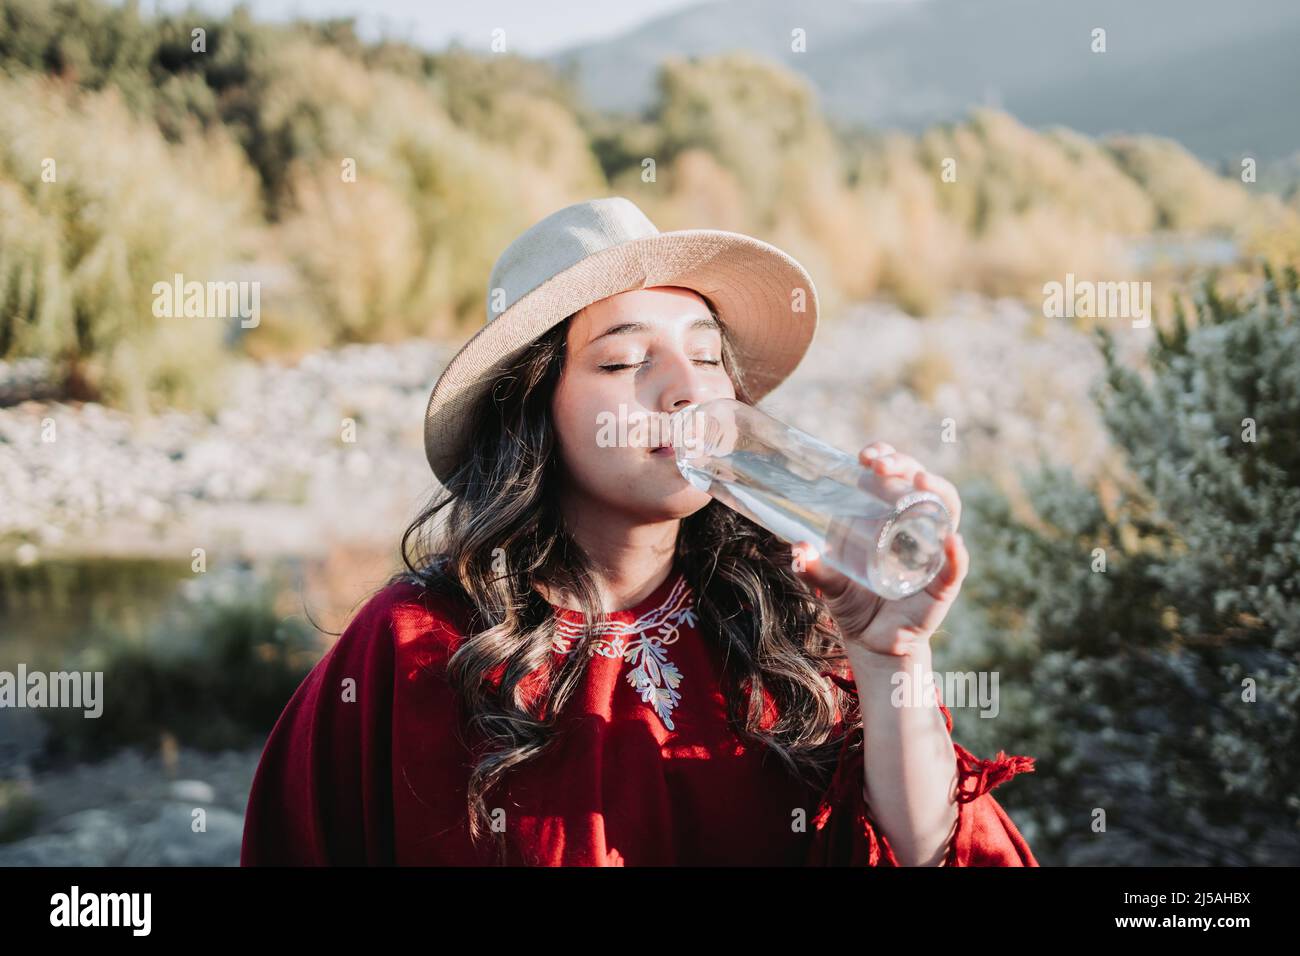 Jeune femme latino-américaine utilisant des vêtements traditionnels, buvant de l'eau dans une bouteille de verre. Banque D'Images